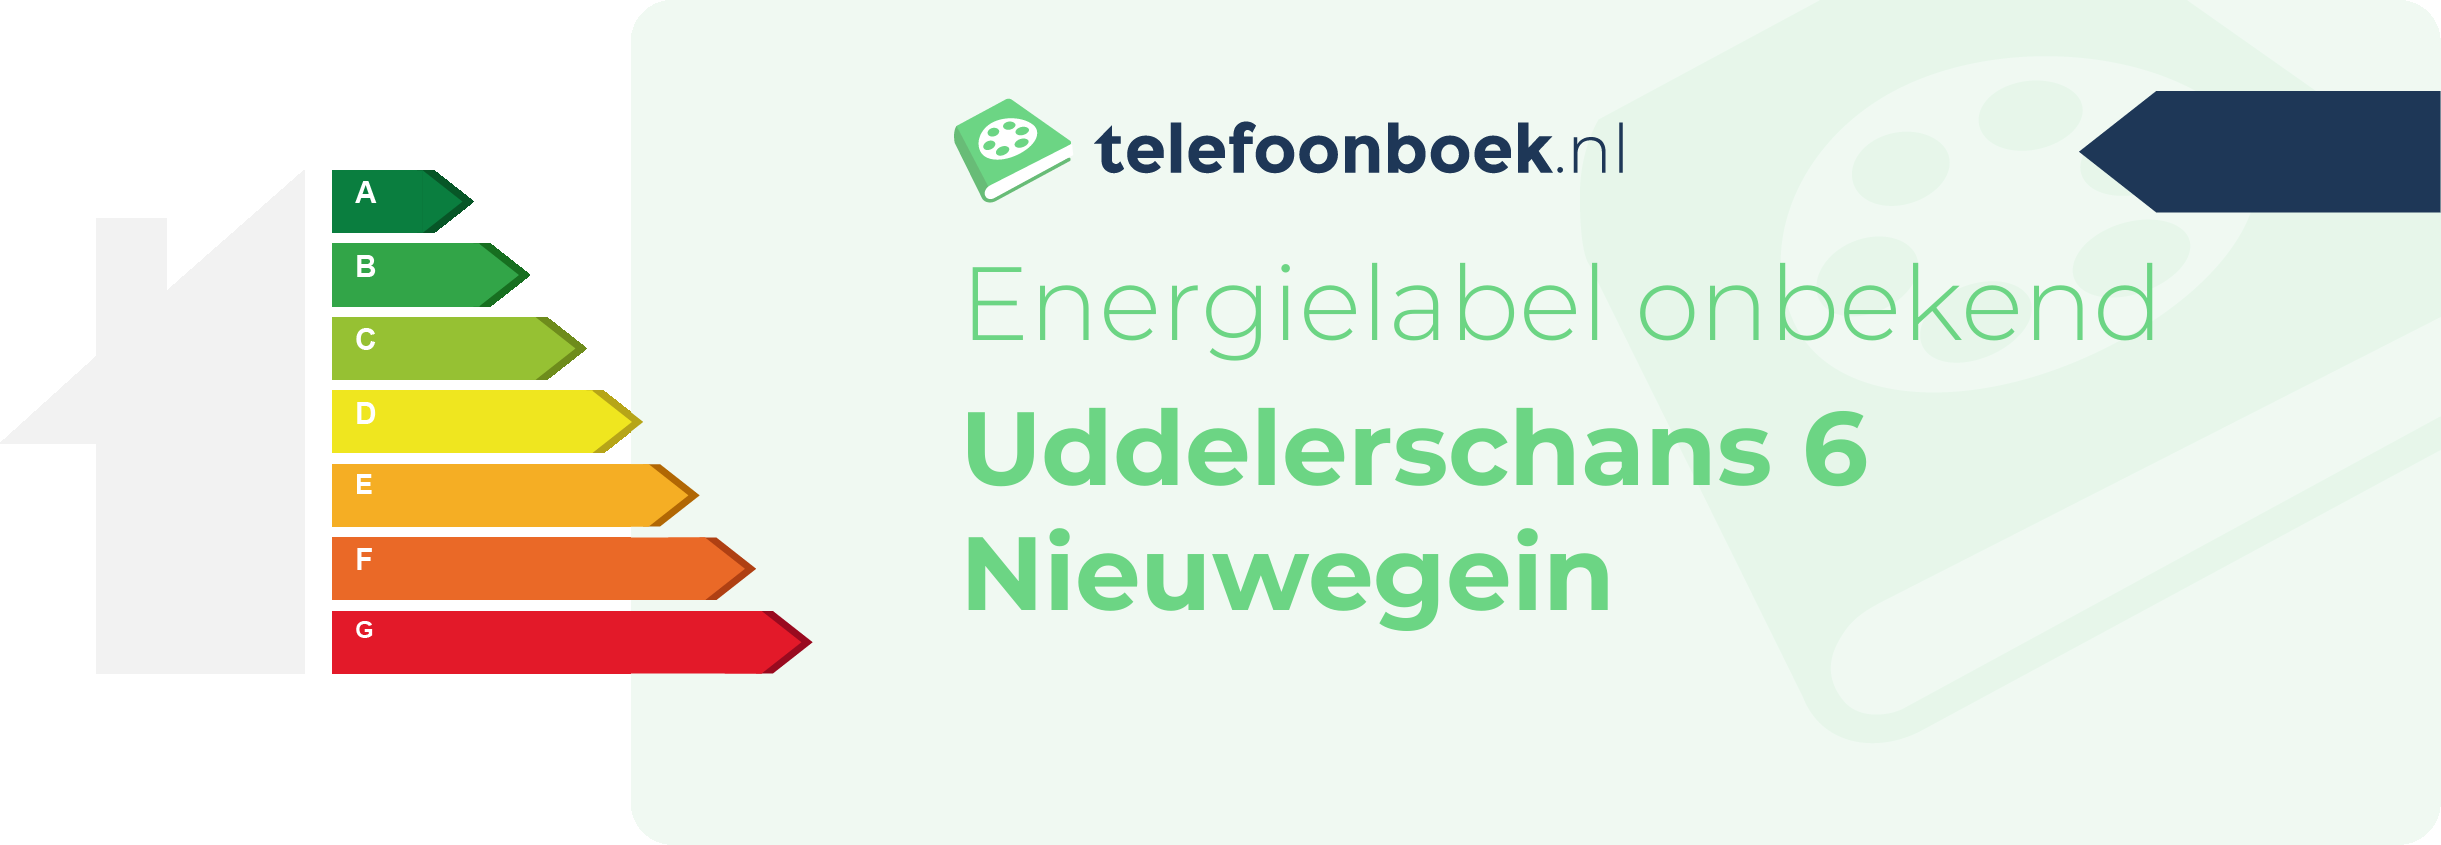 Energielabel Uddelerschans 6 Nieuwegein